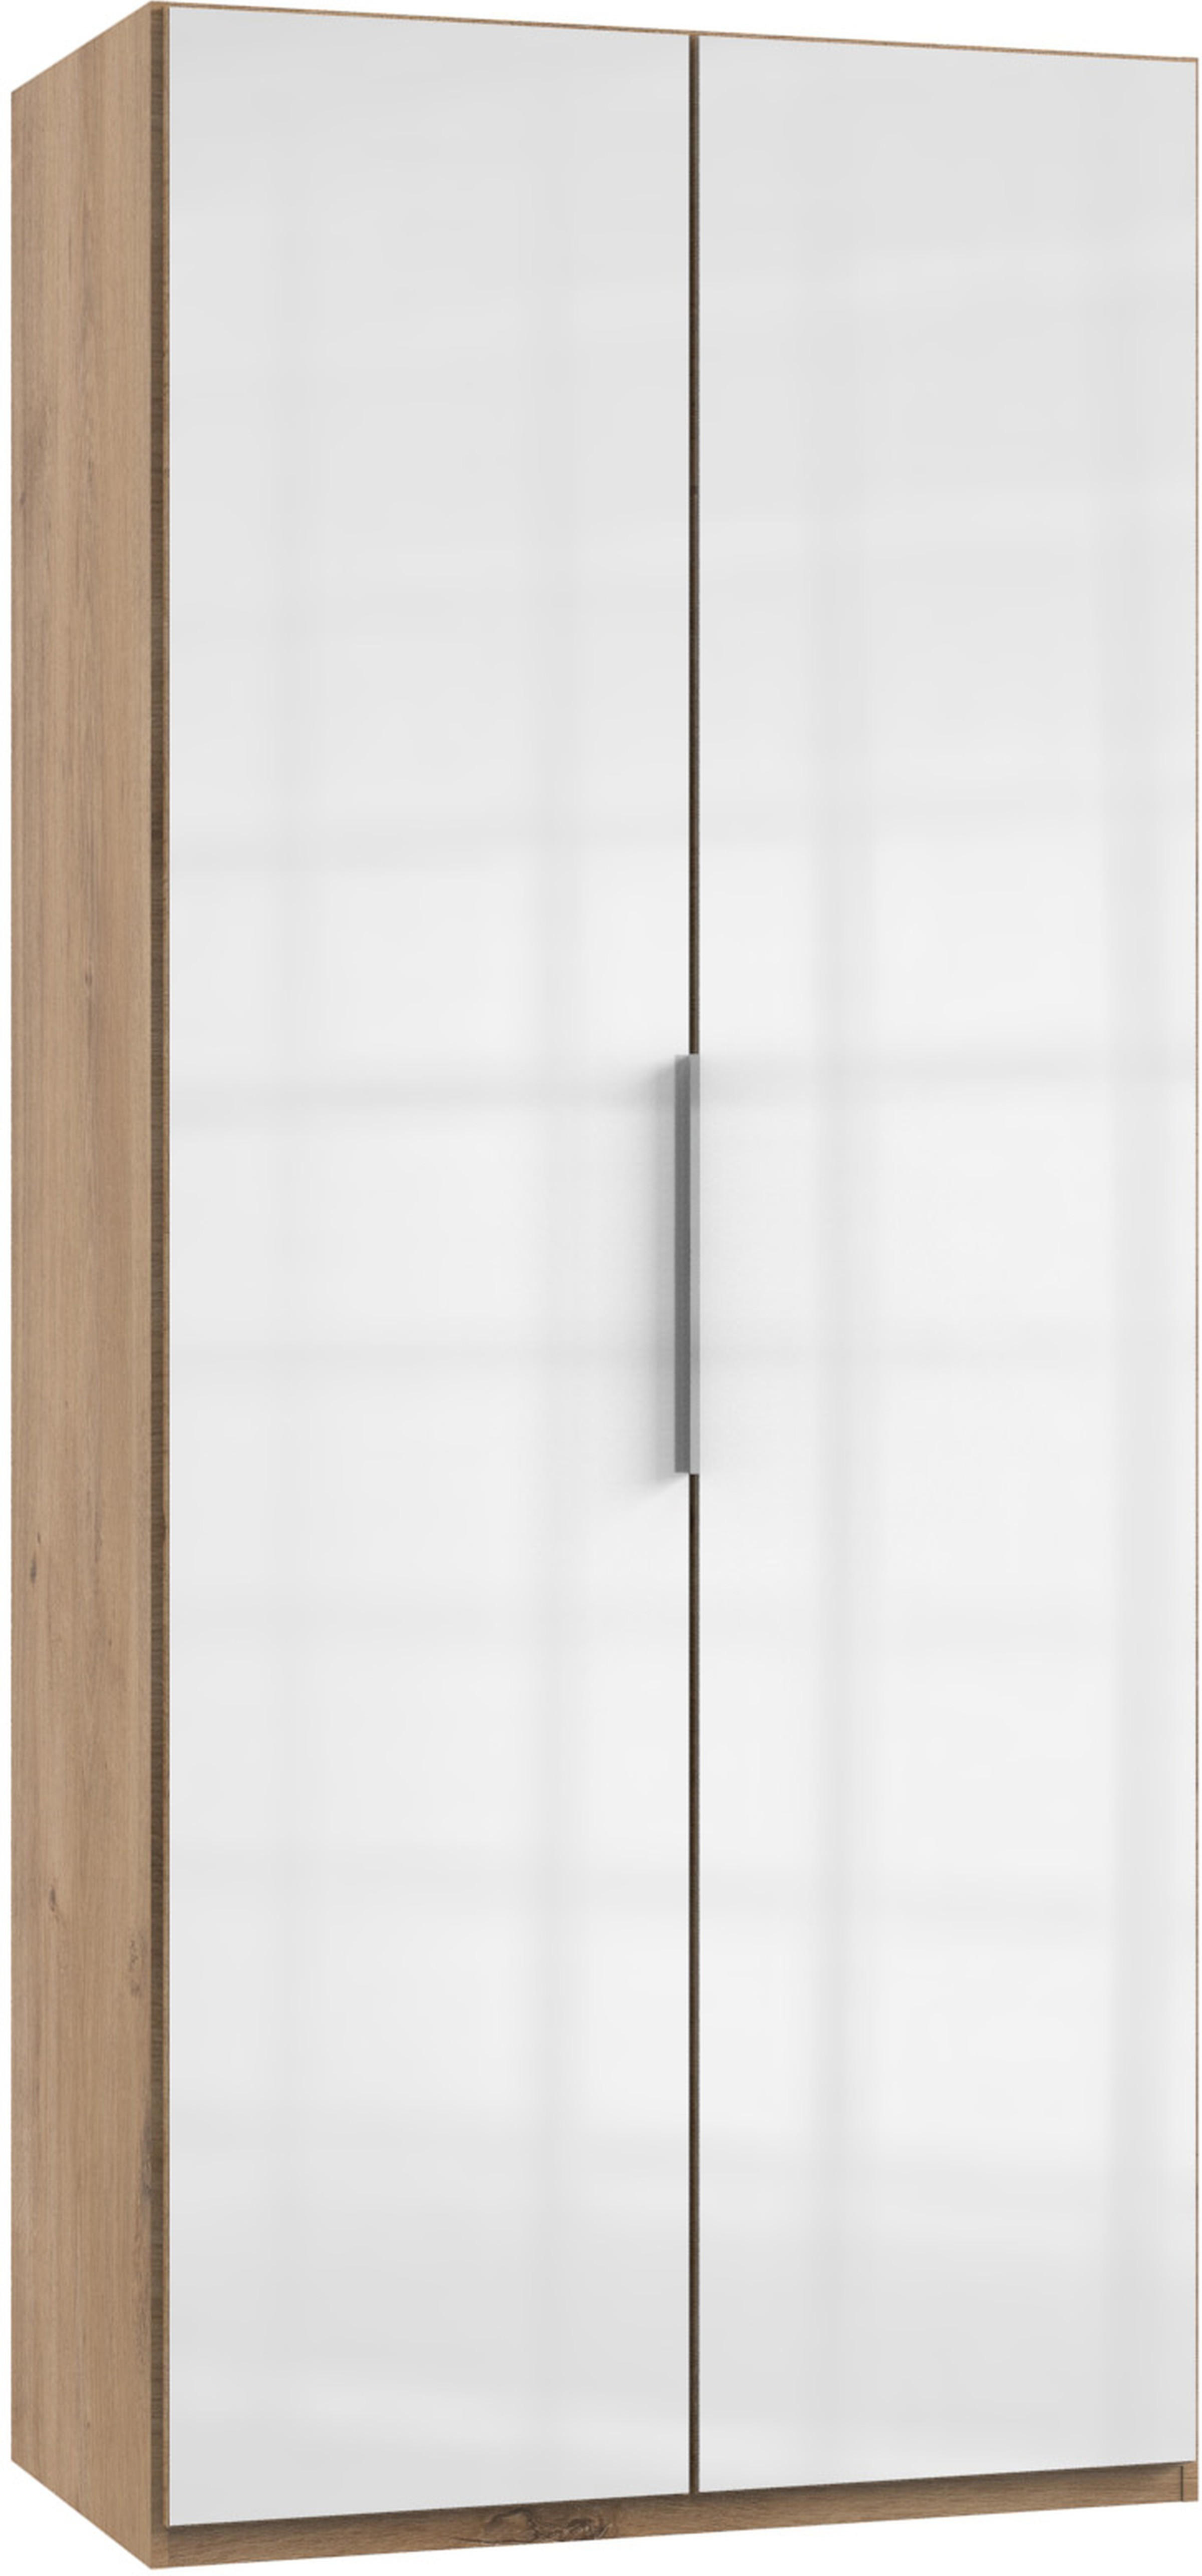 DREHTÜRENSCHRANK 2-türig Weiß, Eichefarben  - Chromfarben/Eichefarben, MODERN, Holzwerkstoff/Metall (100/216/58cm) - MID.YOU